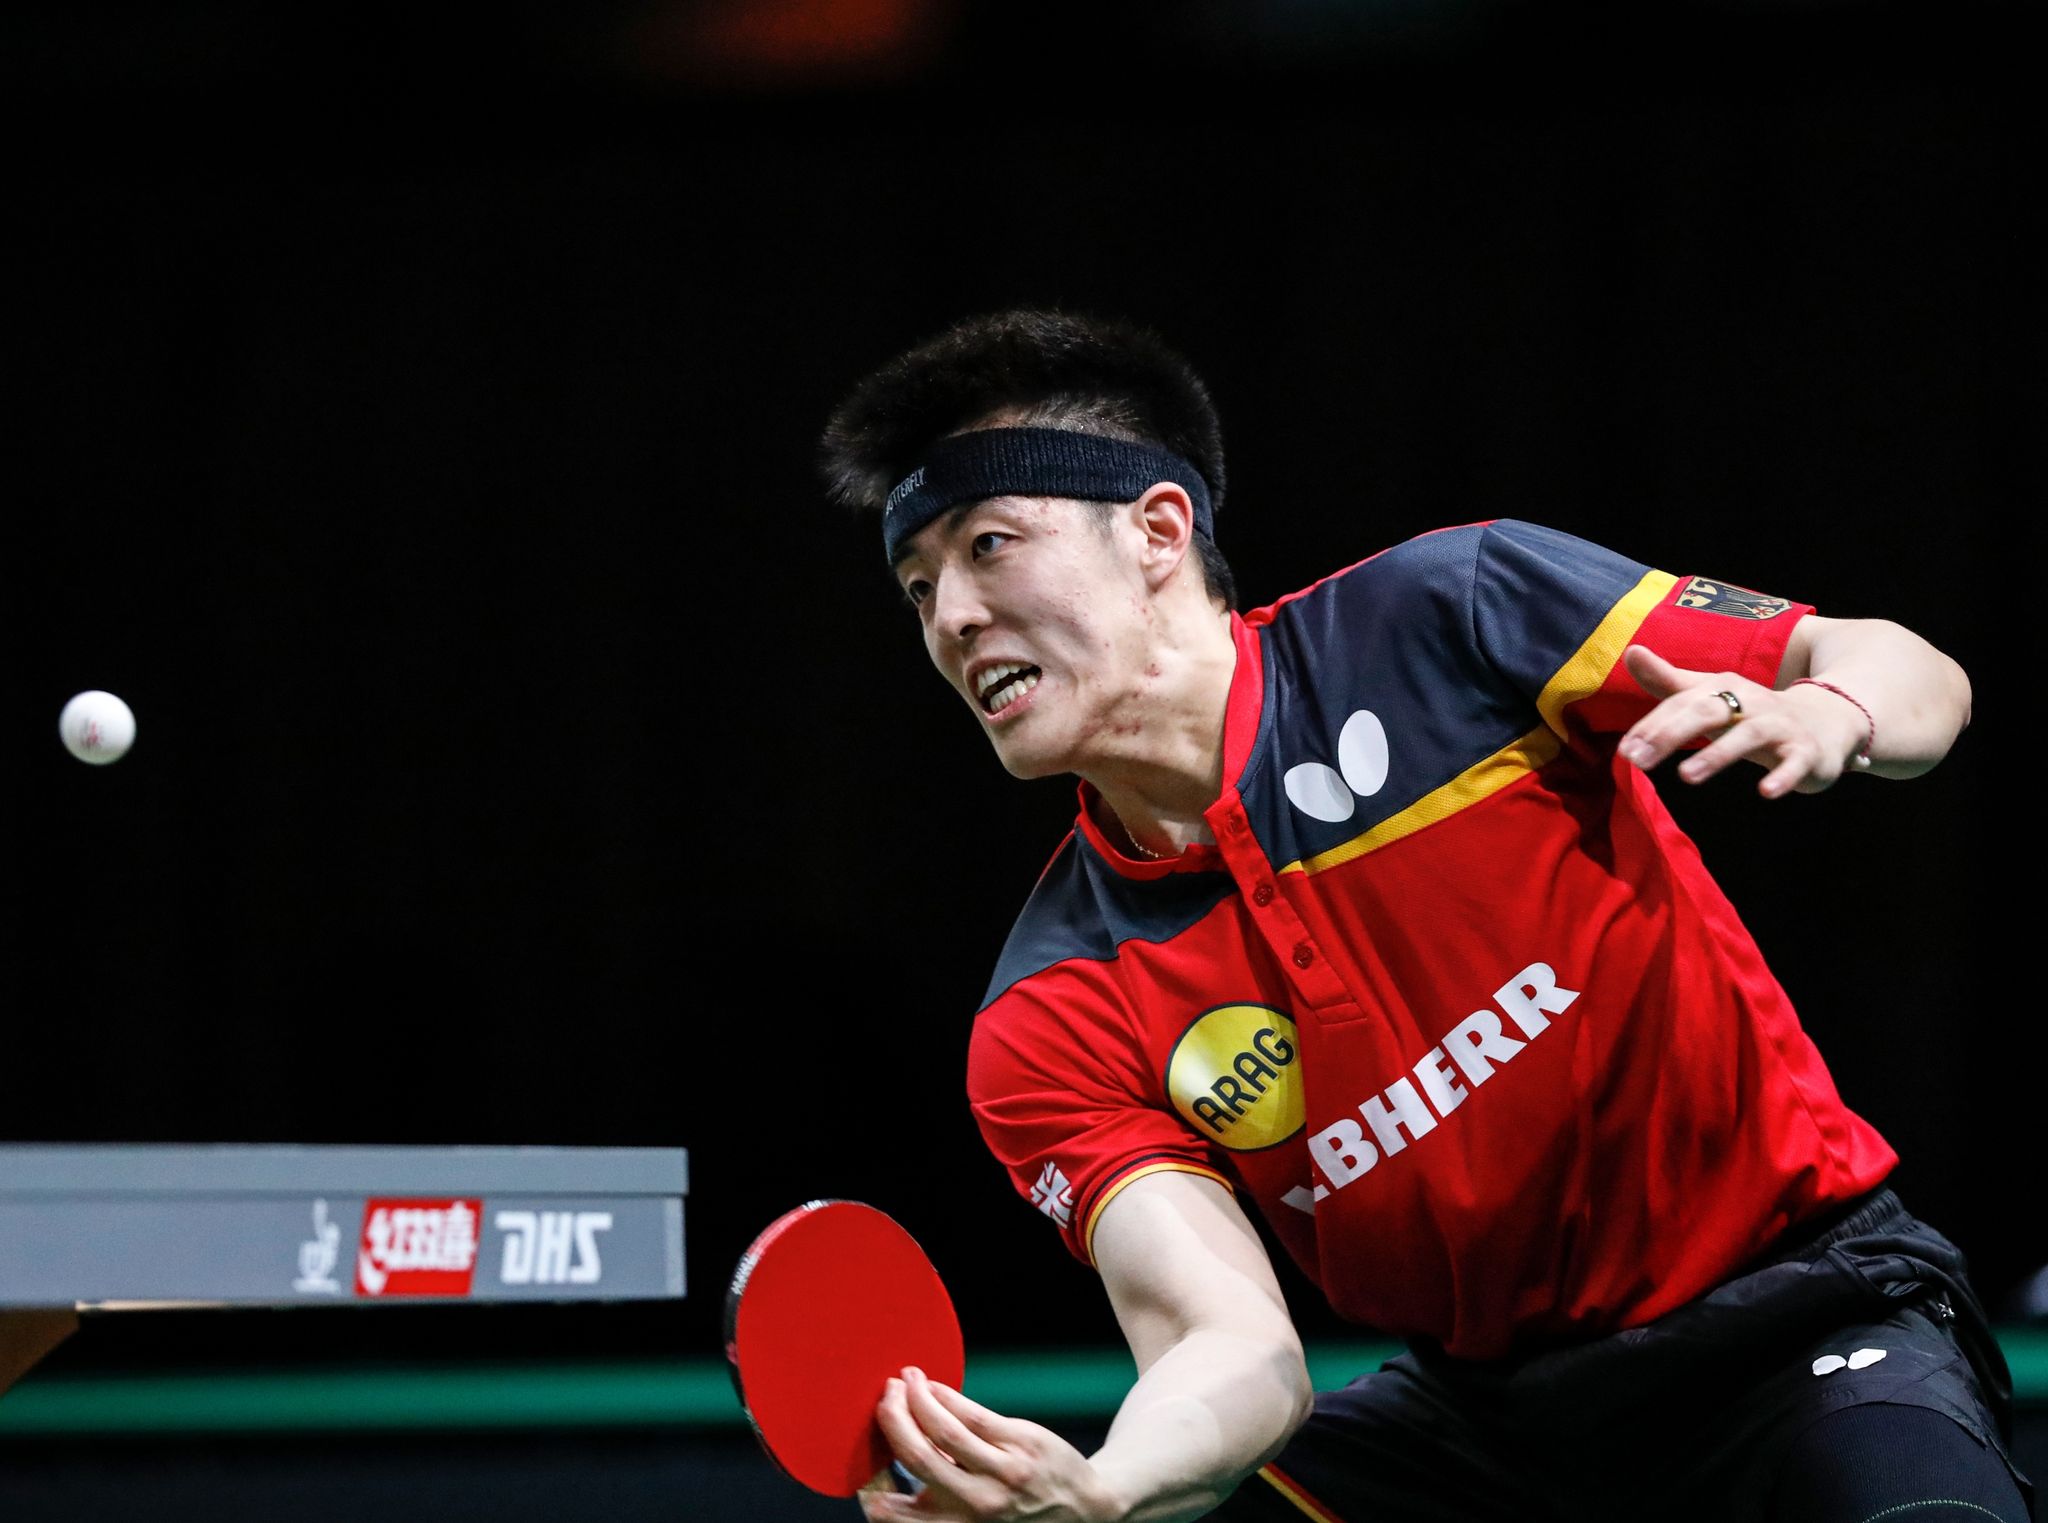 Tischtennis-Europameister Qiu Dang gewann sein Einzel im Finale der Europaspiele.